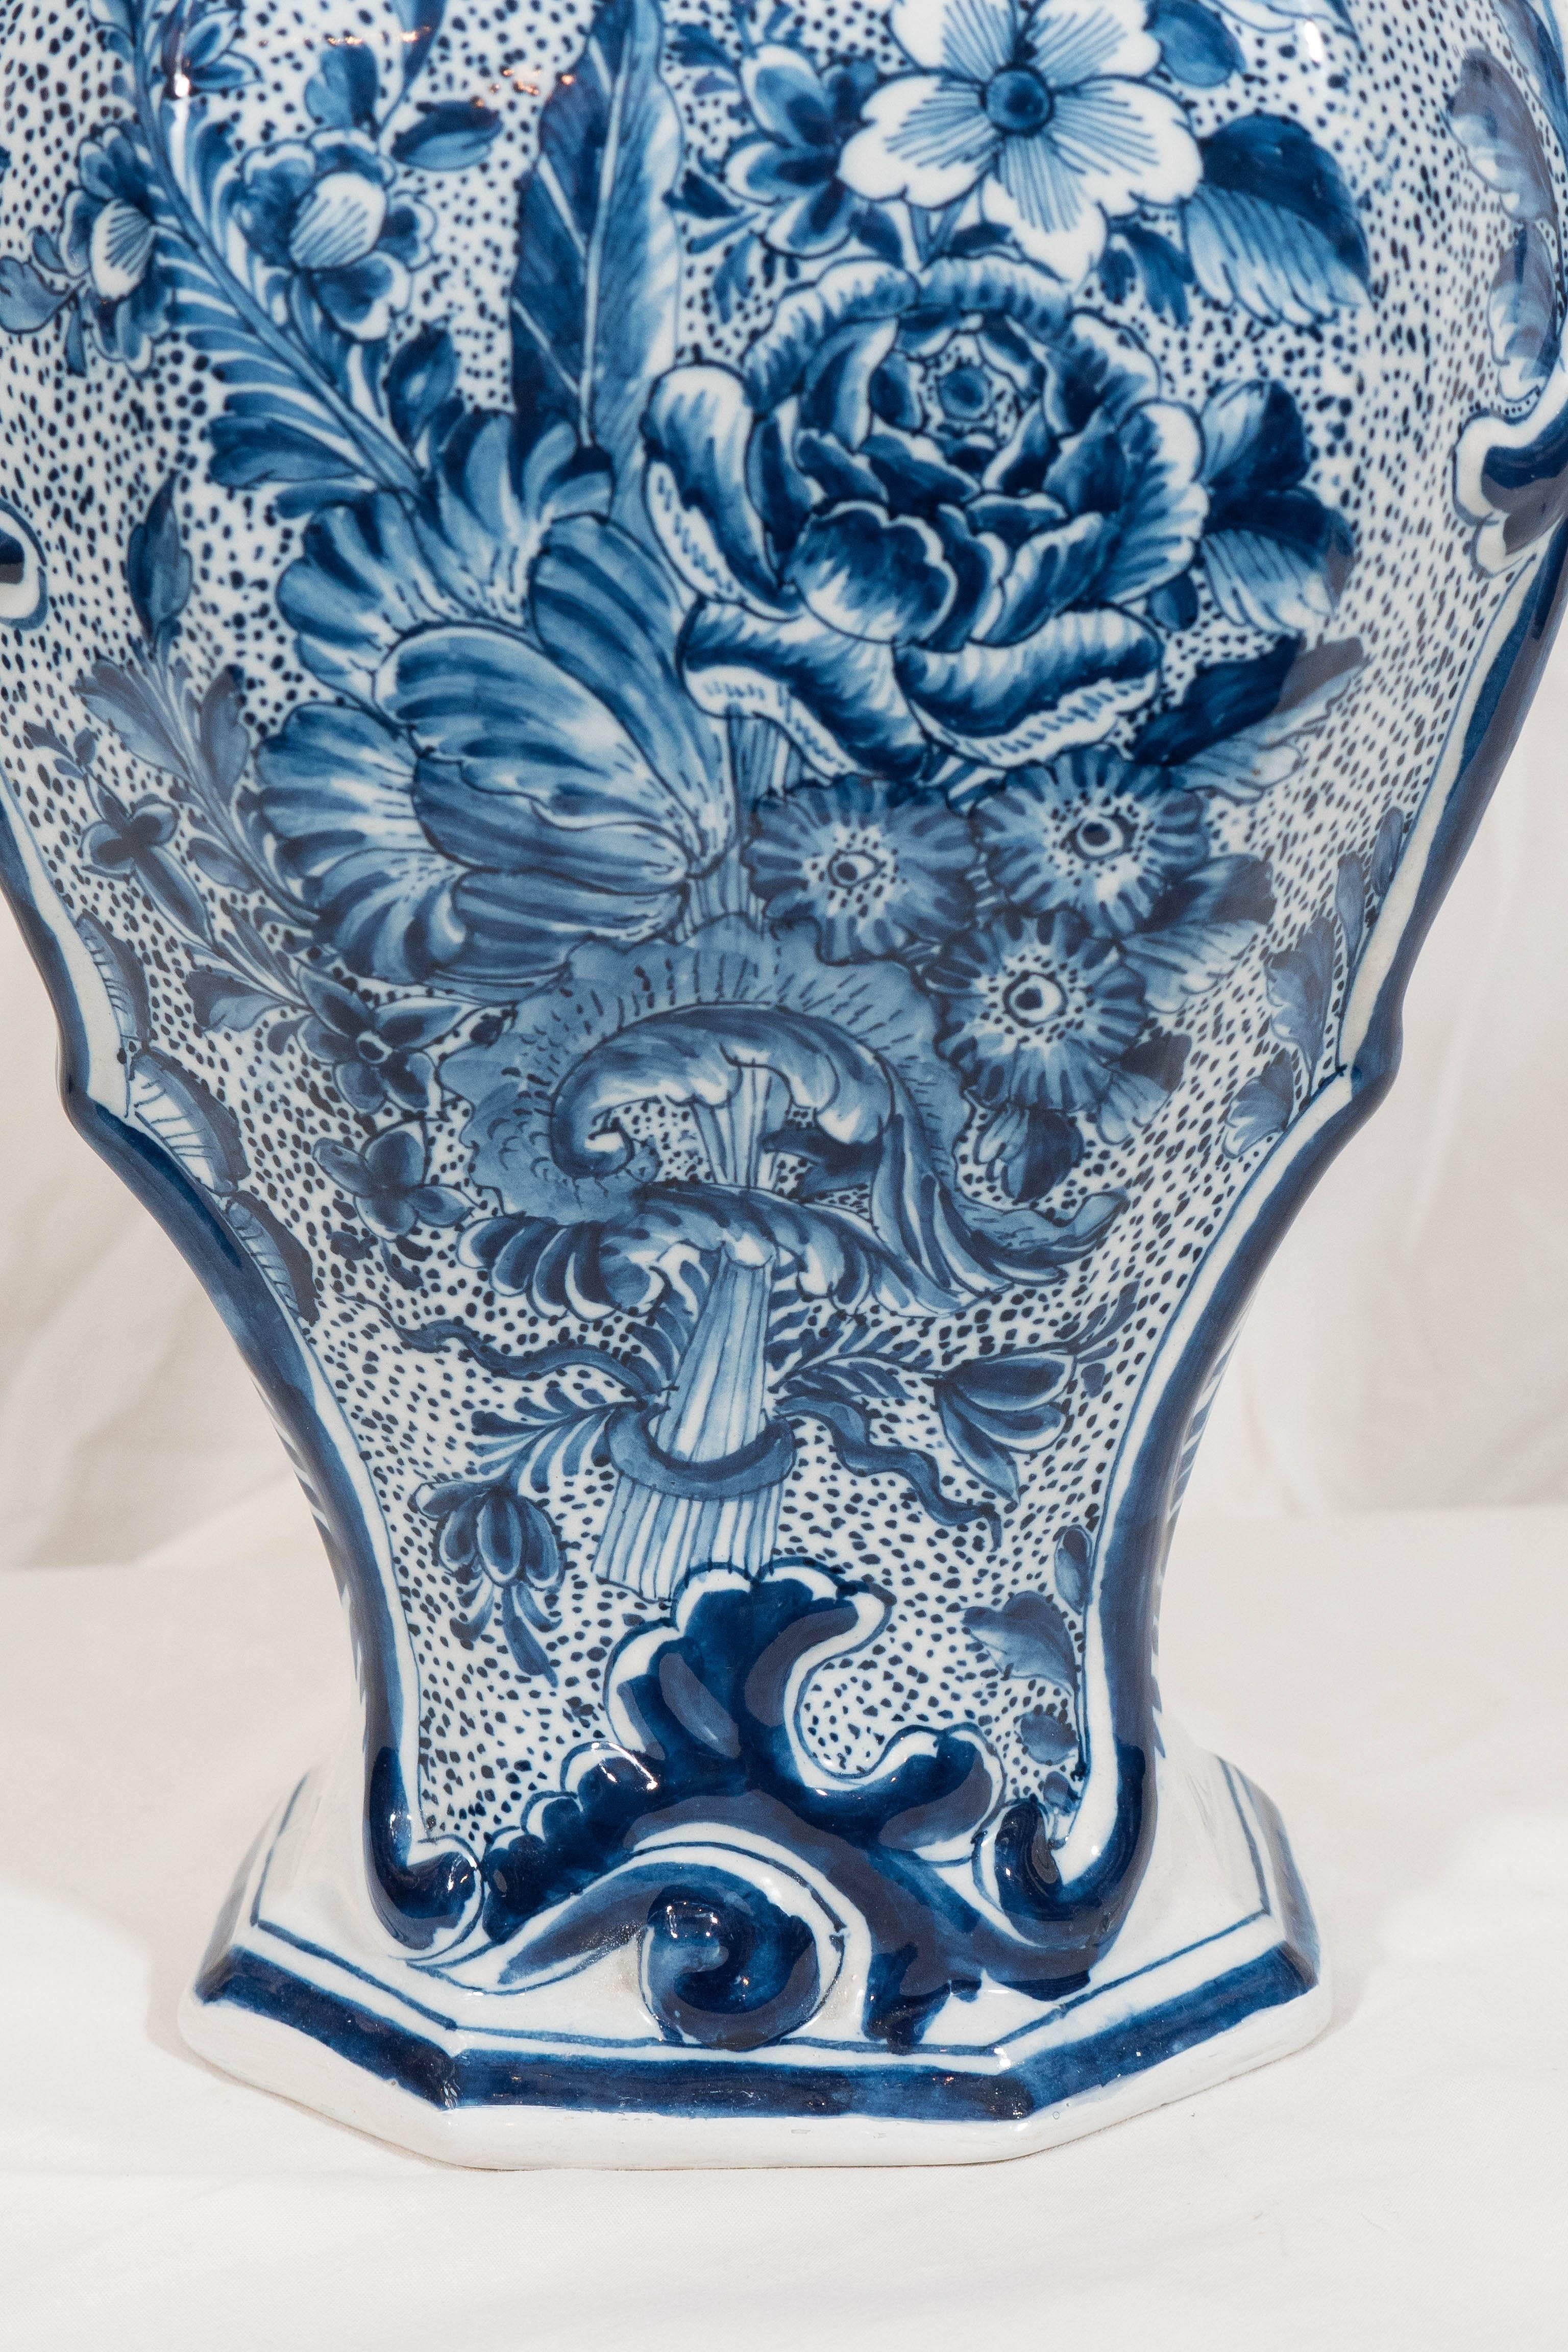 Rococo  Dutch Delft Blue and White Covered Vase Made circa 1830